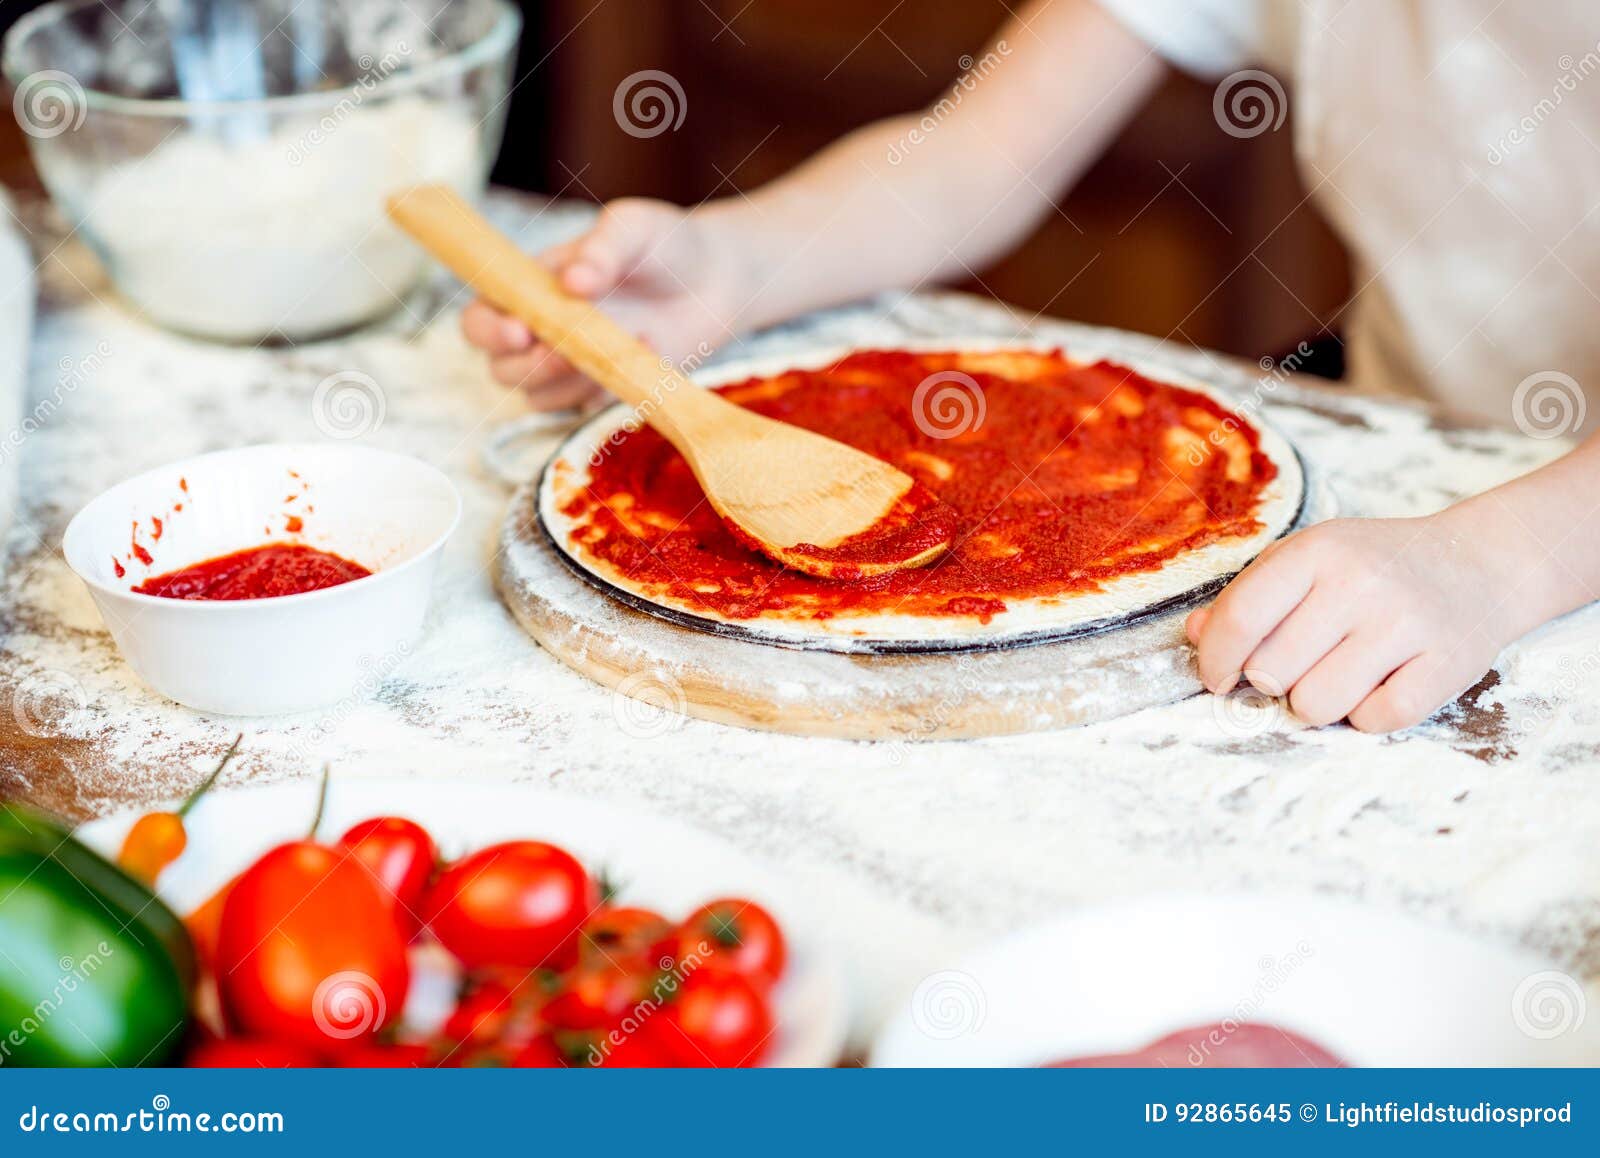 томатный соус на пиццу фото 114